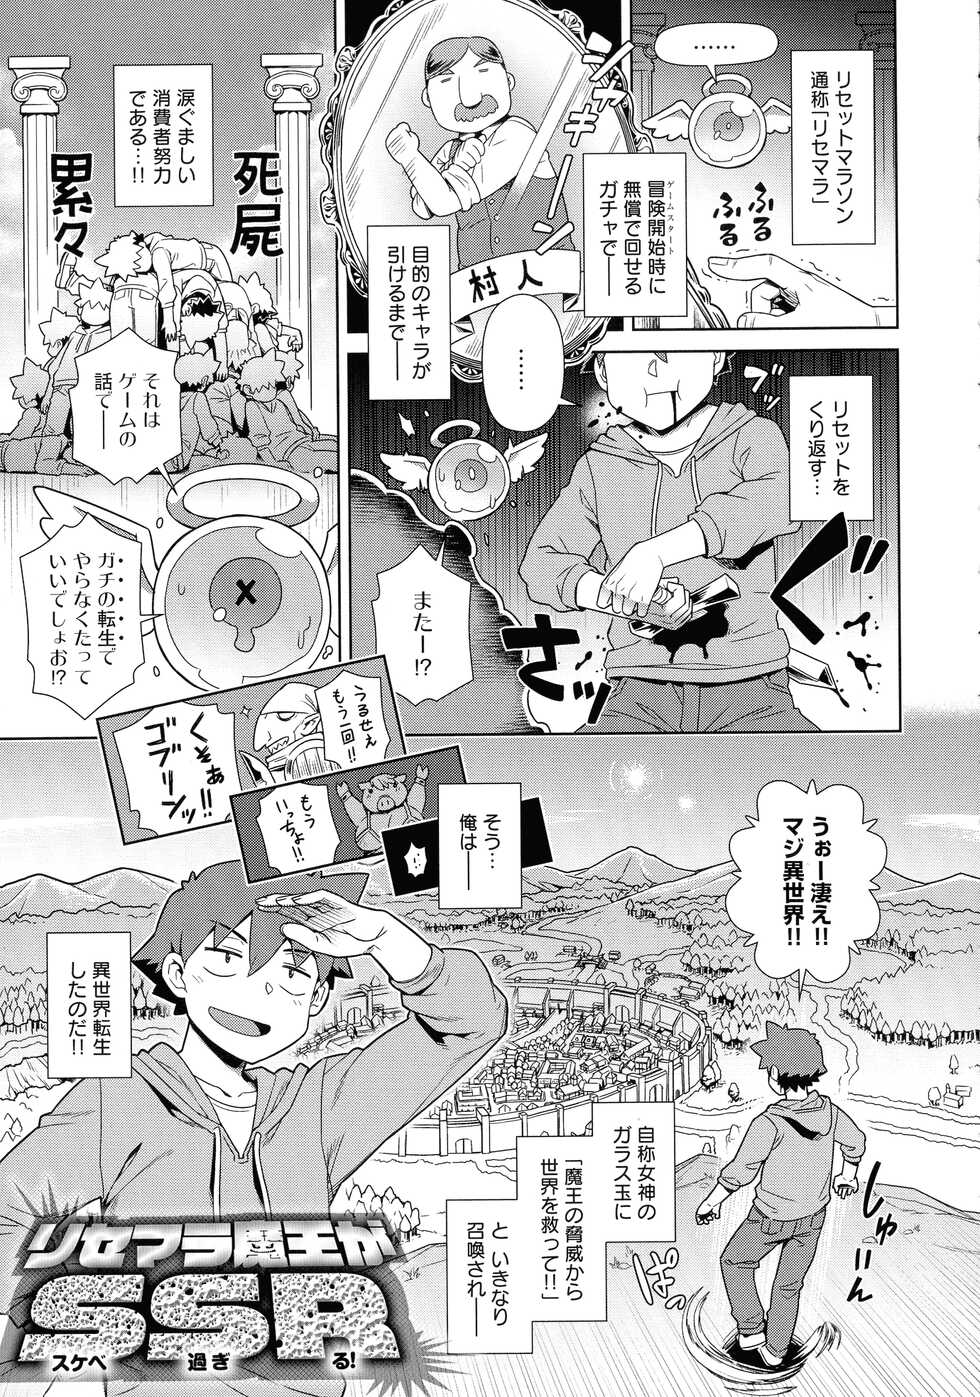 [Kousuke] Mao-sama wa nige rarenai - Page 32